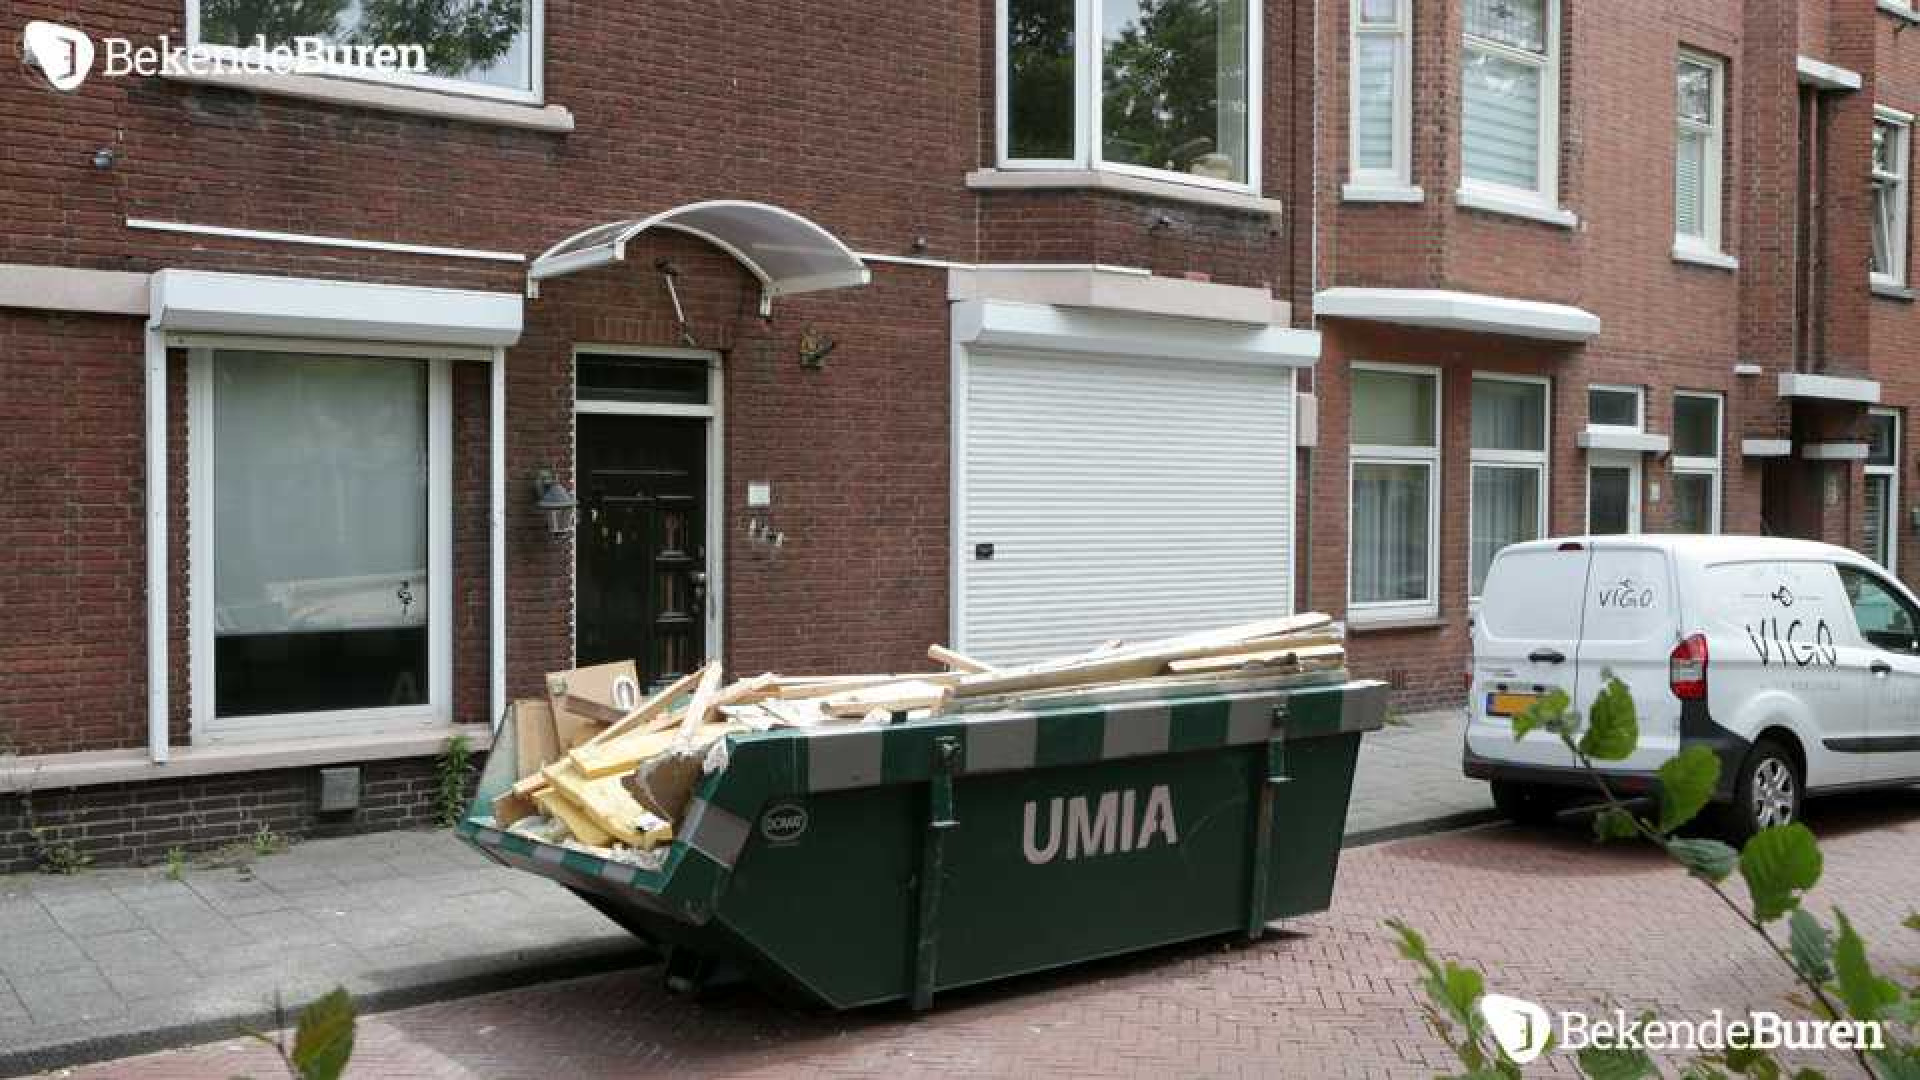 Bibi Breijman druk aan het verbouwen aan haar Haagse woning! Zie foto's 2